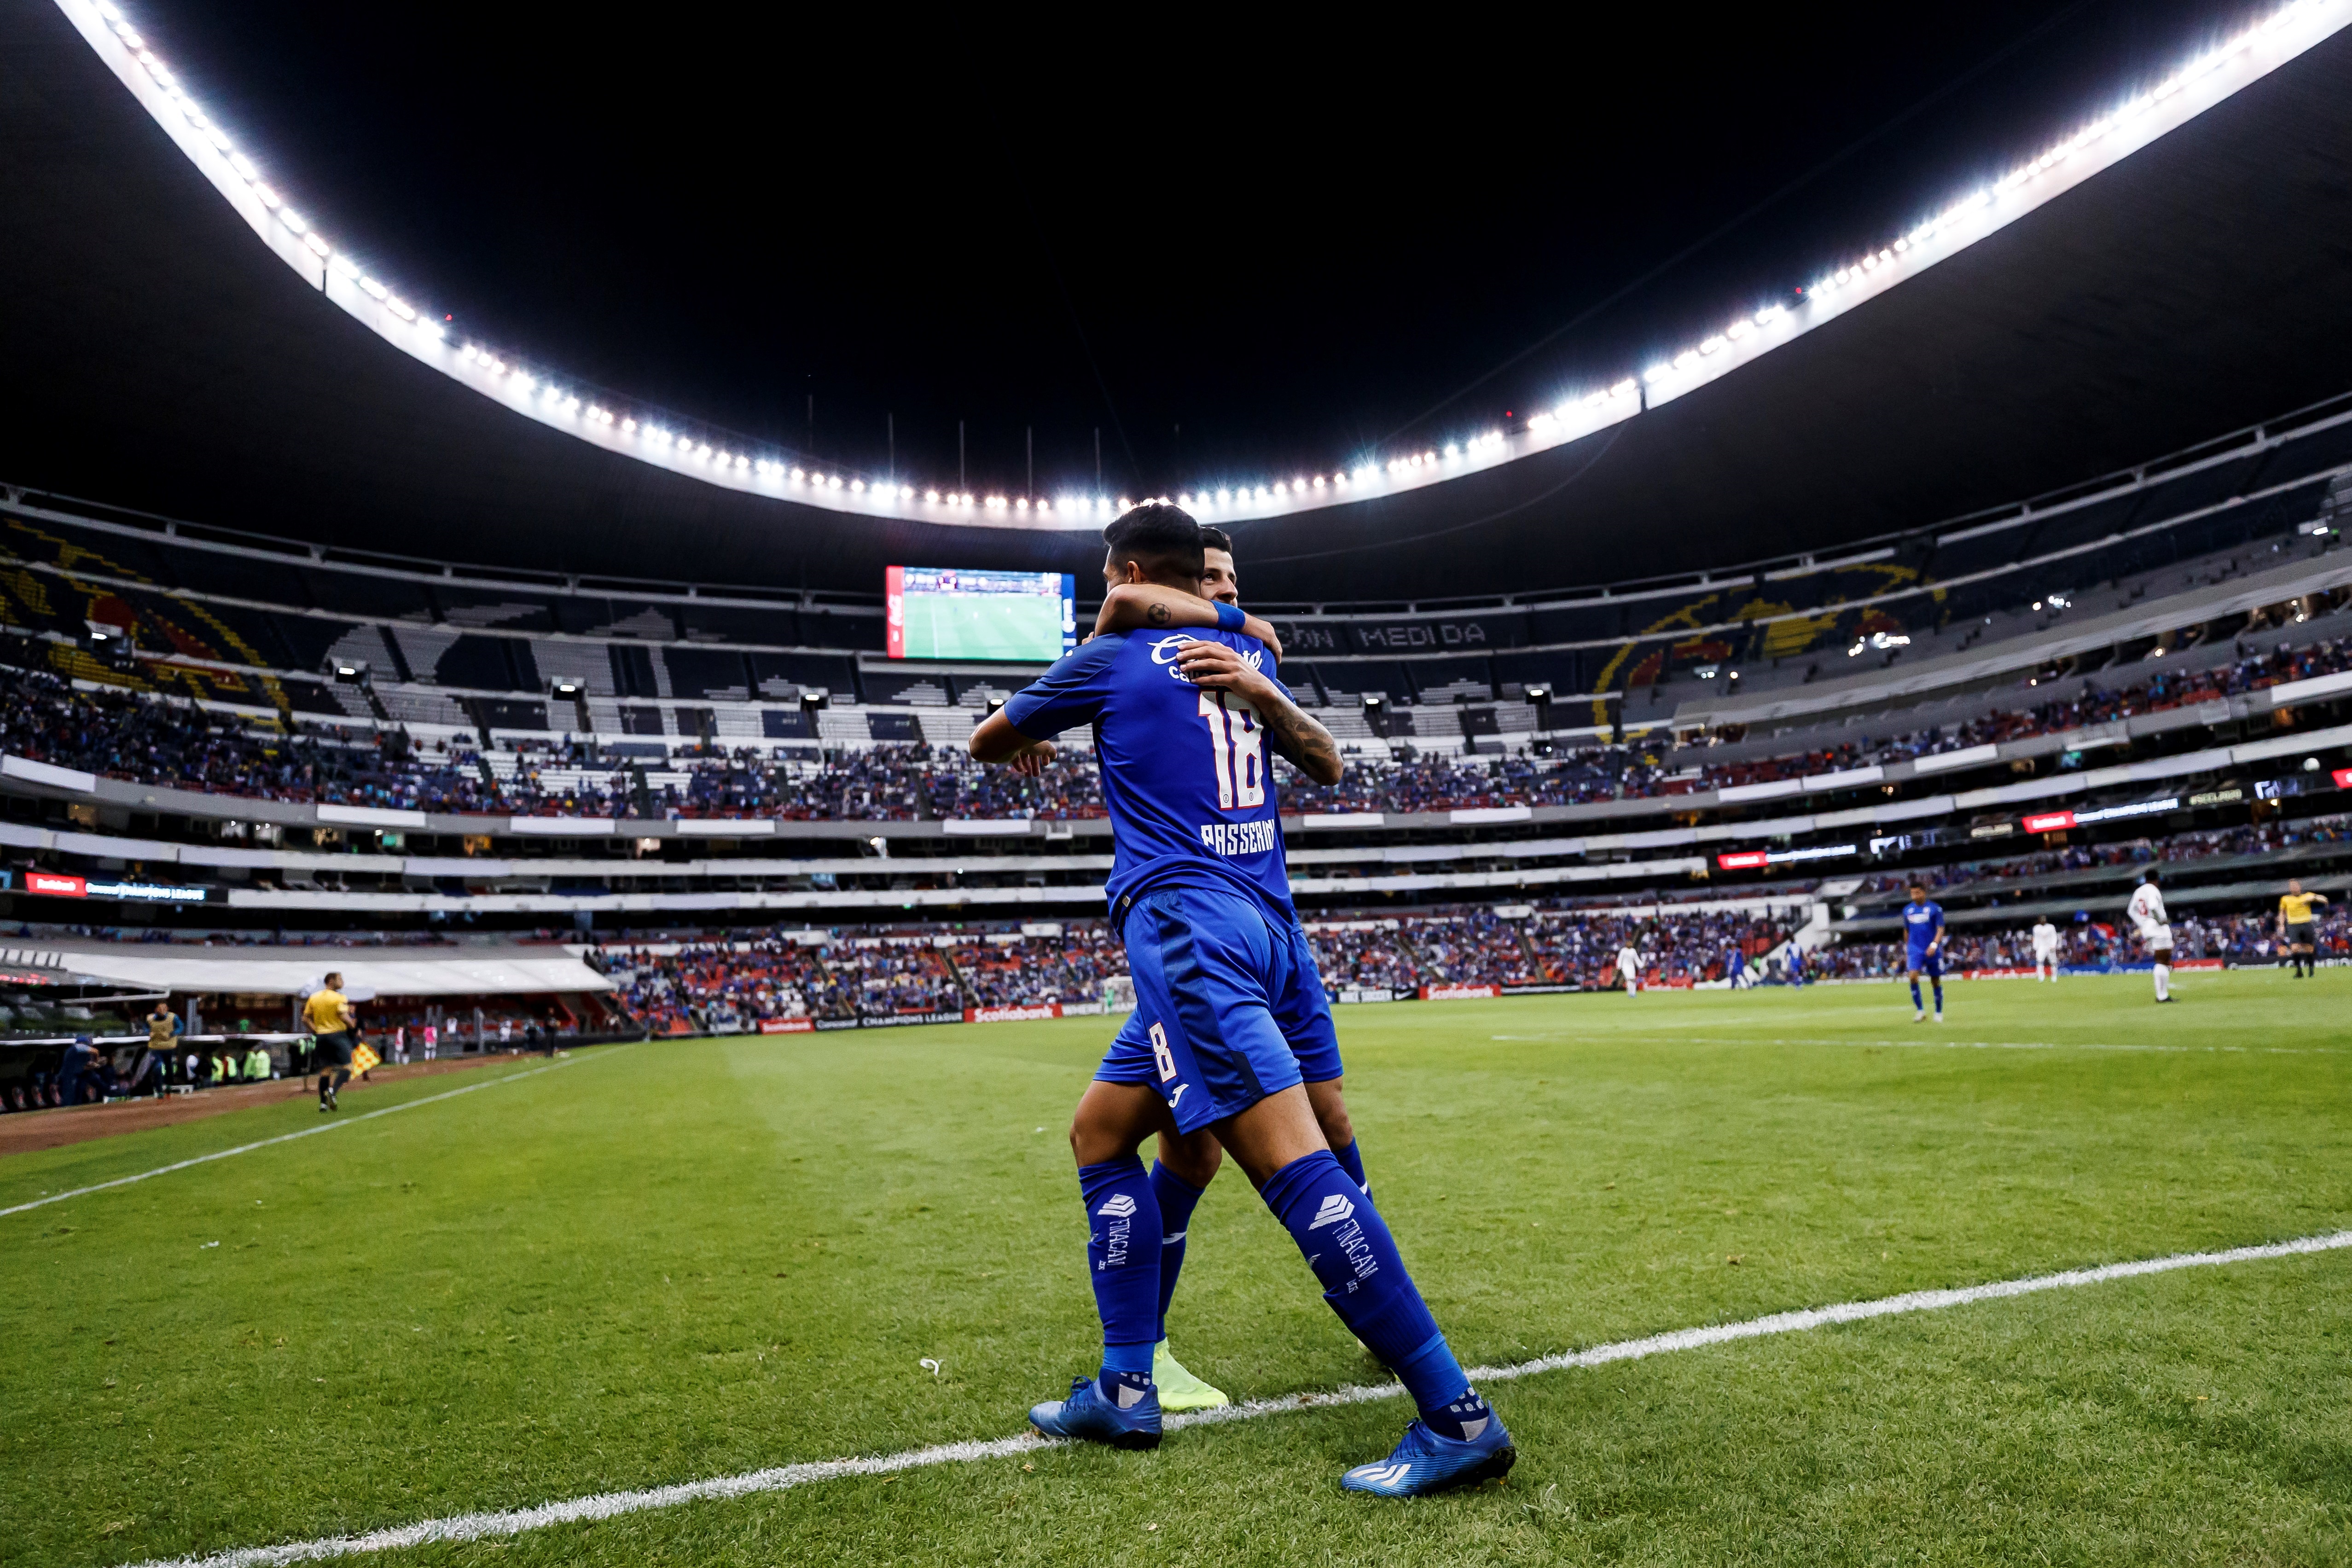 El último partido en el que se permitió el acceso al público en el Estadio Azteca fue el 7 de marzo  (Foto: EFE/José Méndez/Archivo)
